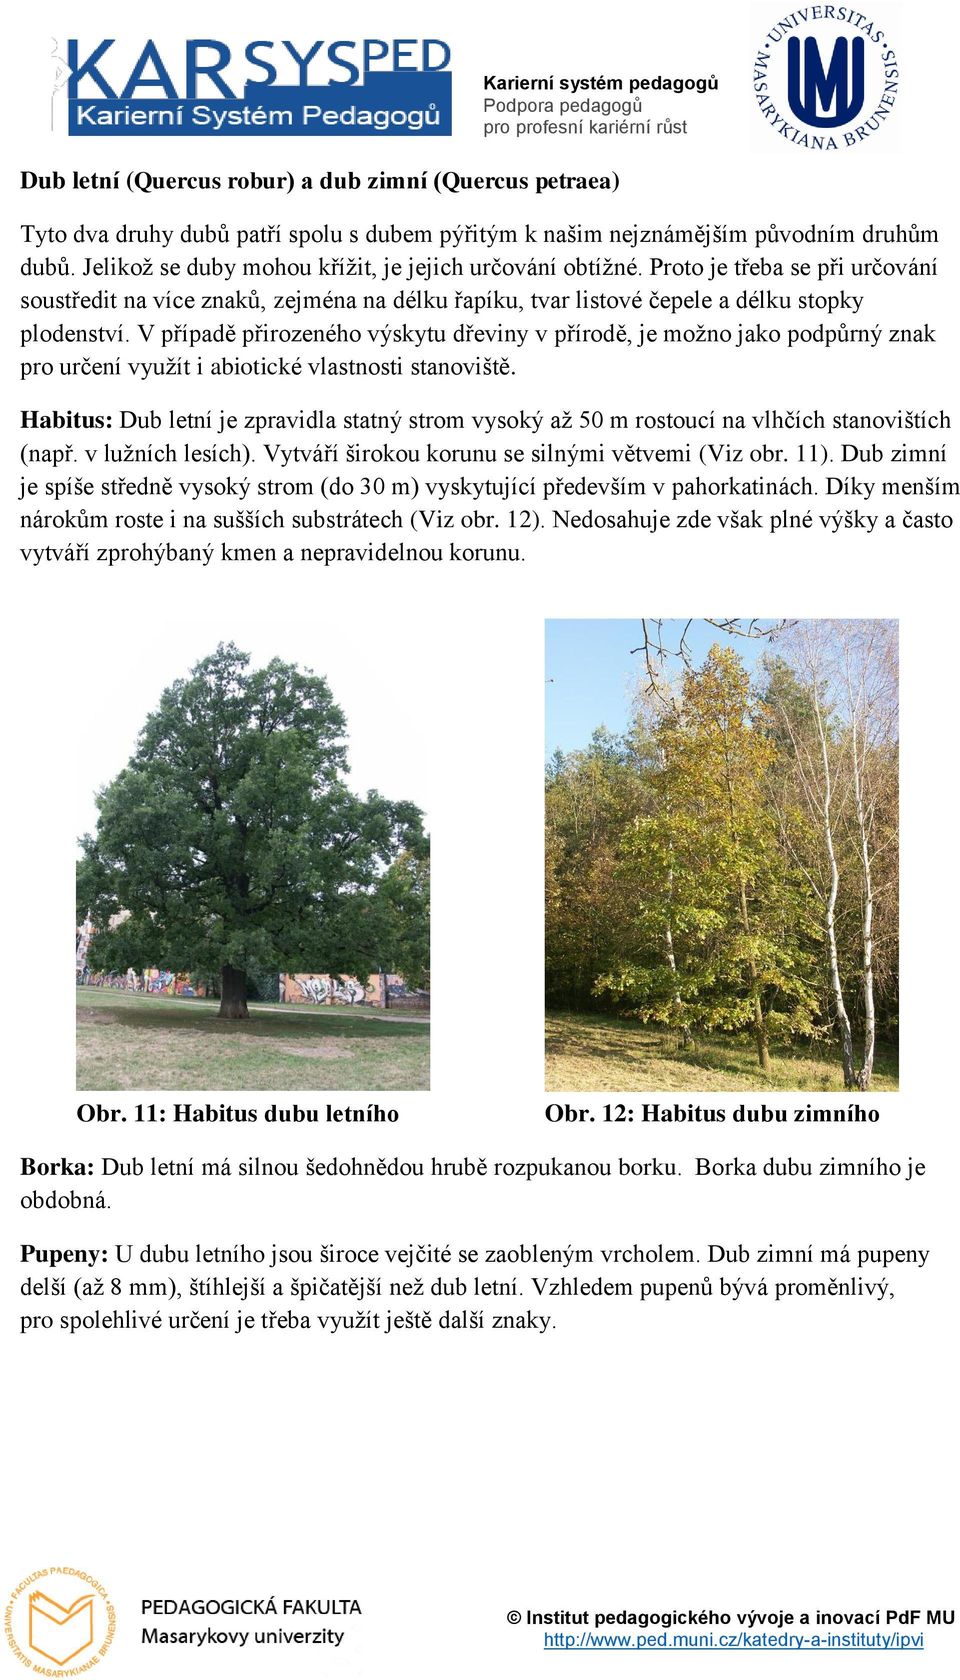 V případě přirozeného výskytu dřeviny v přírodě, je možno jako podpůrný znak pro určení využít i abiotické vlastnosti stanoviště.